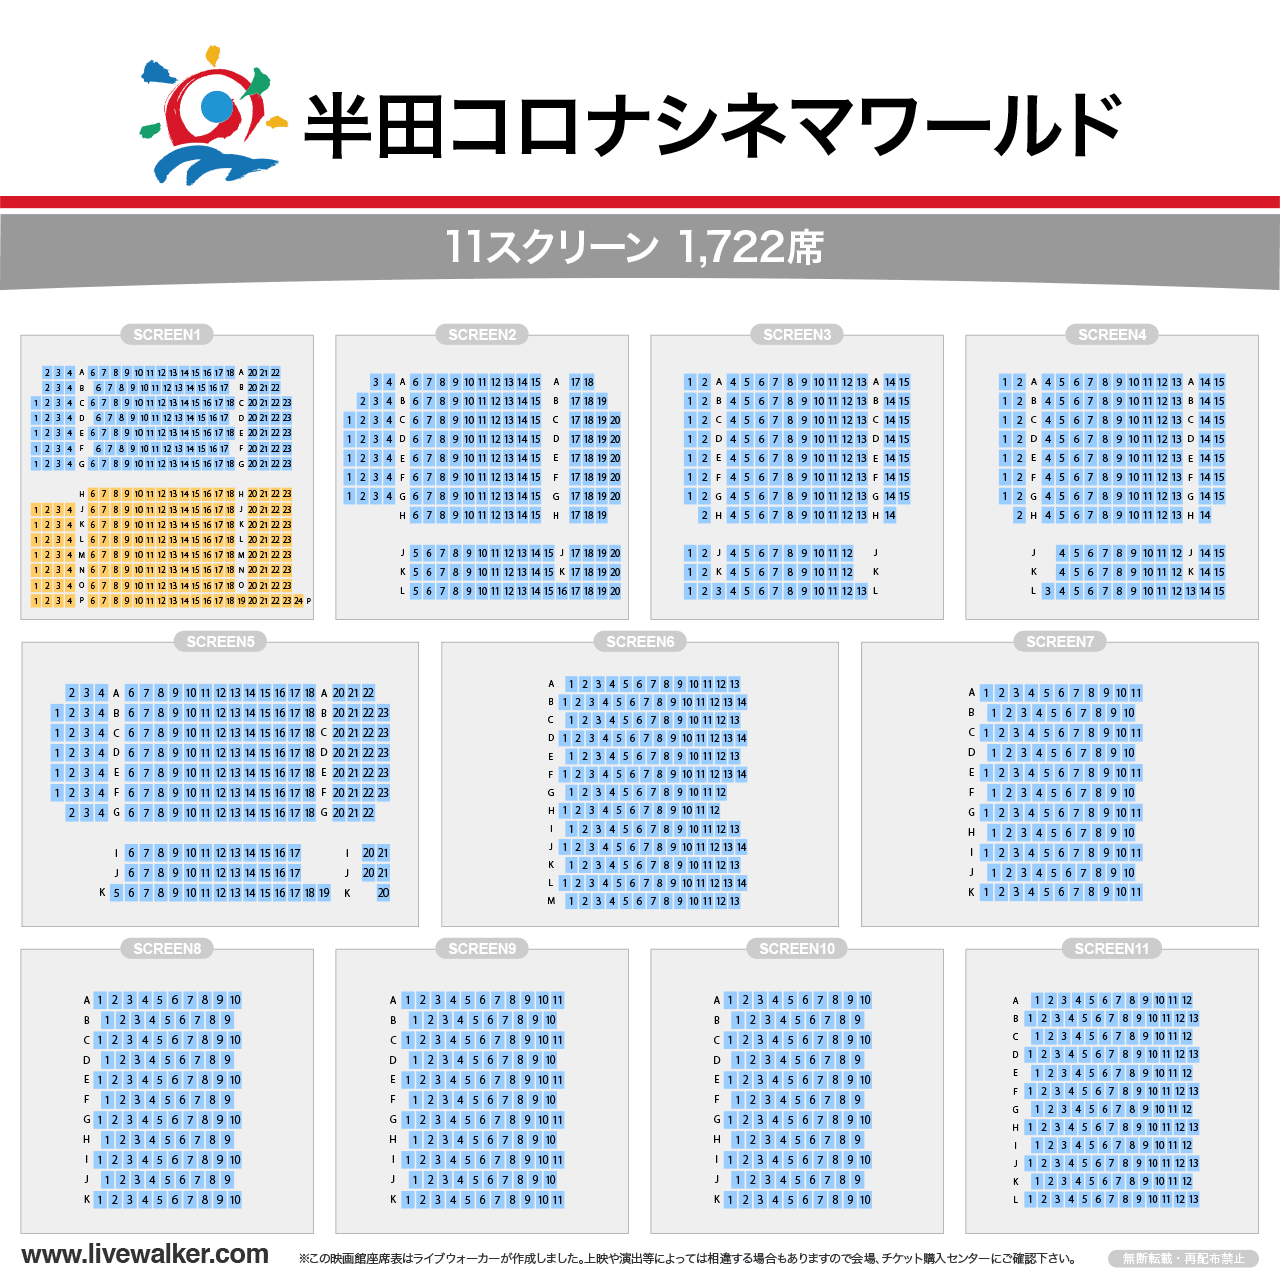 半田コロナシネマワールドスクリーンの座席表